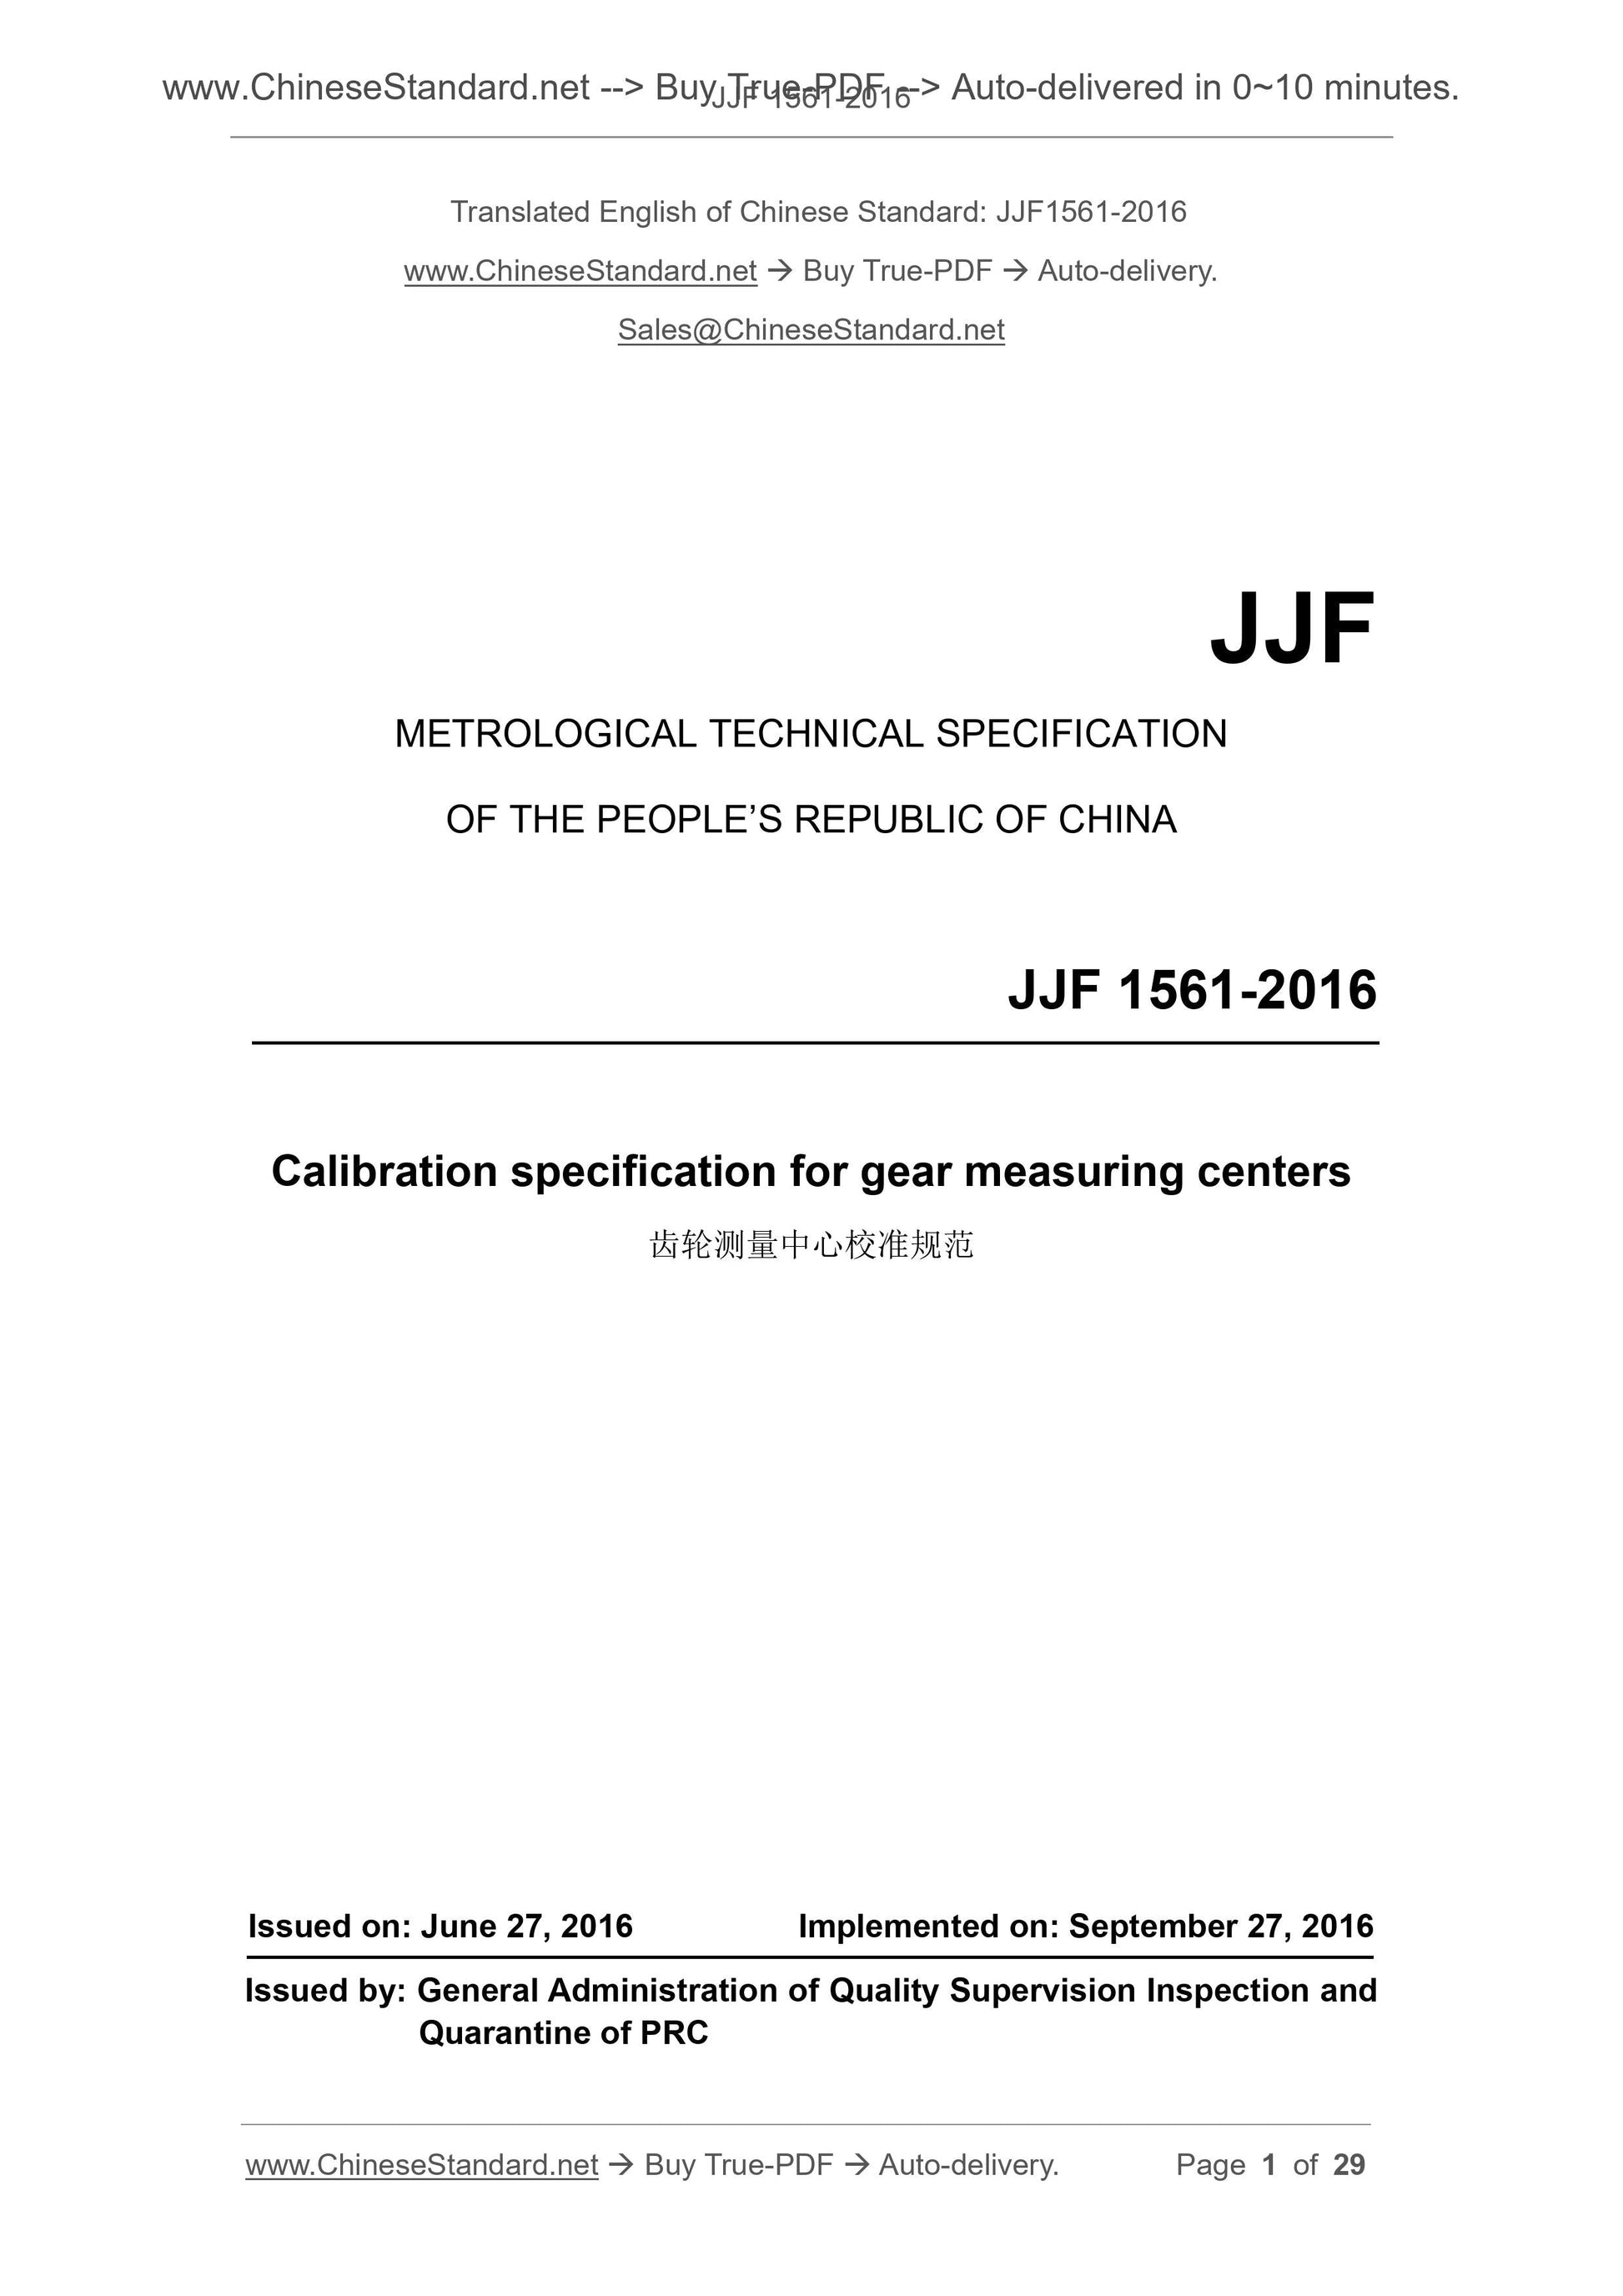 JJF 1561-2016 Page 1